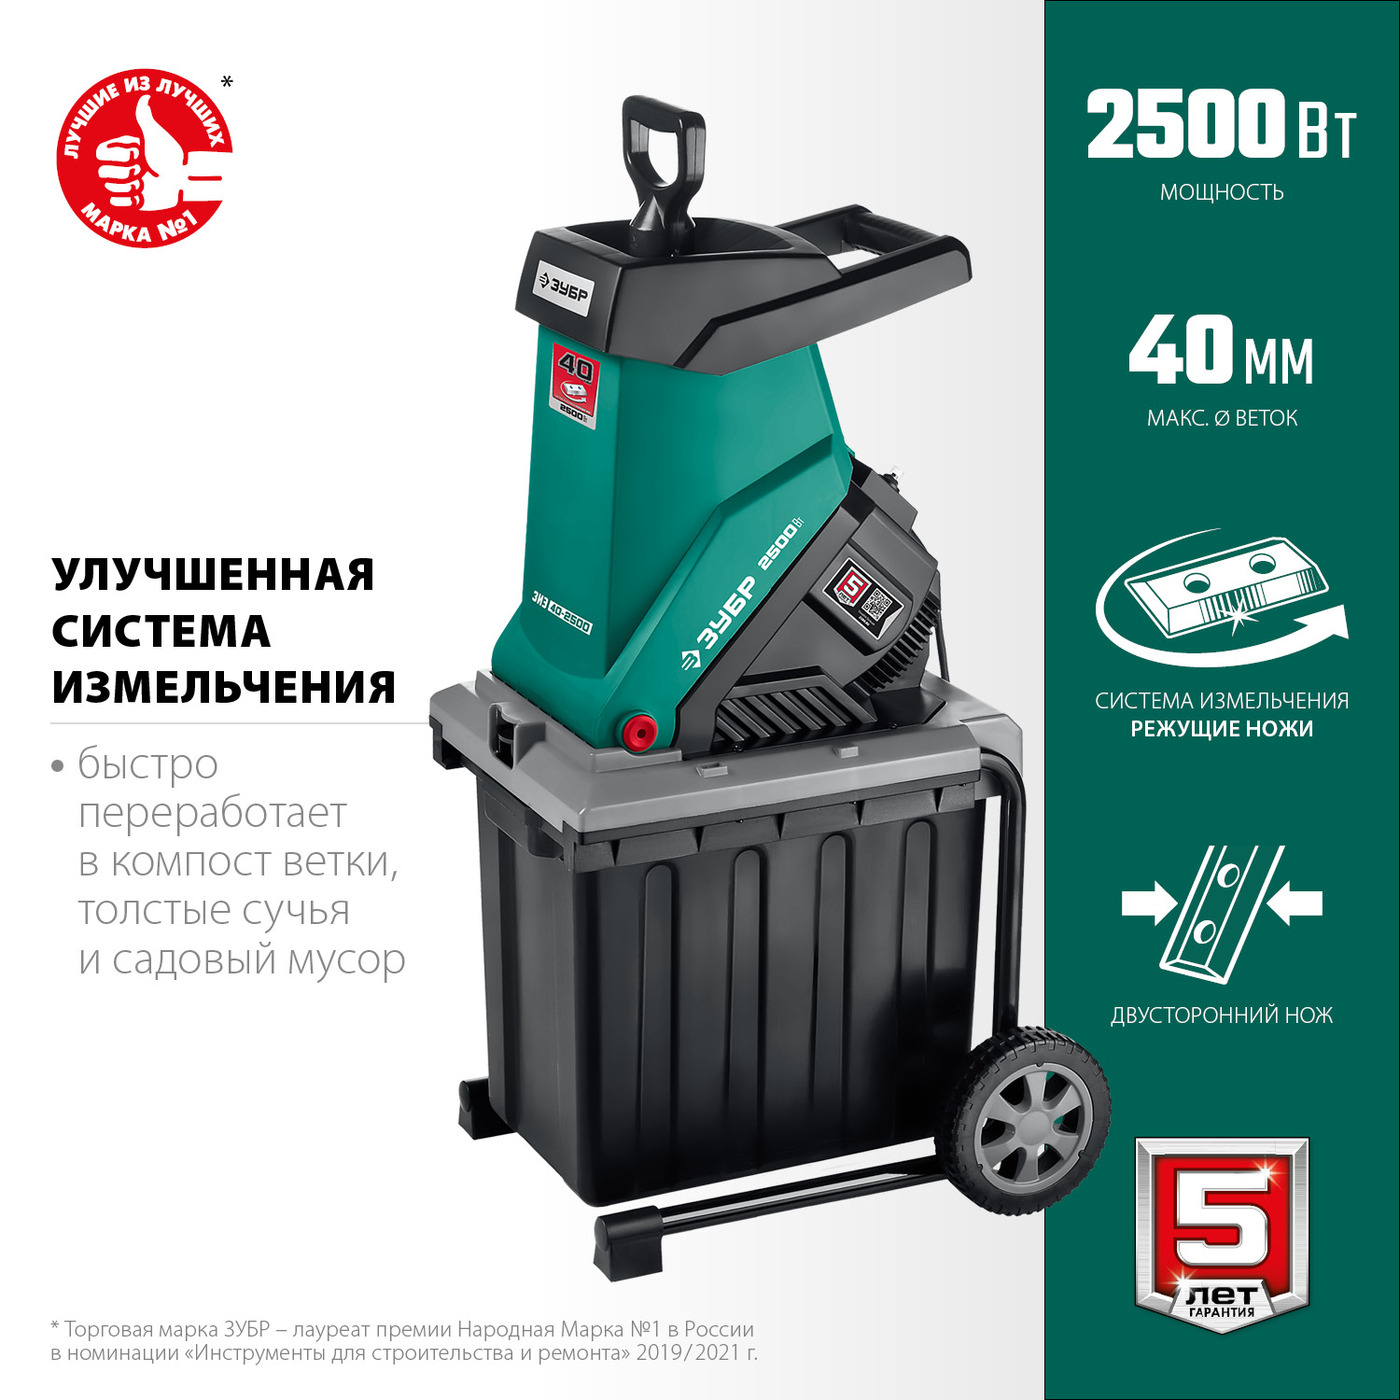 ЗУБР 2500 Вт электрический садовый измельчитель (ЗИЭ-40-2500)